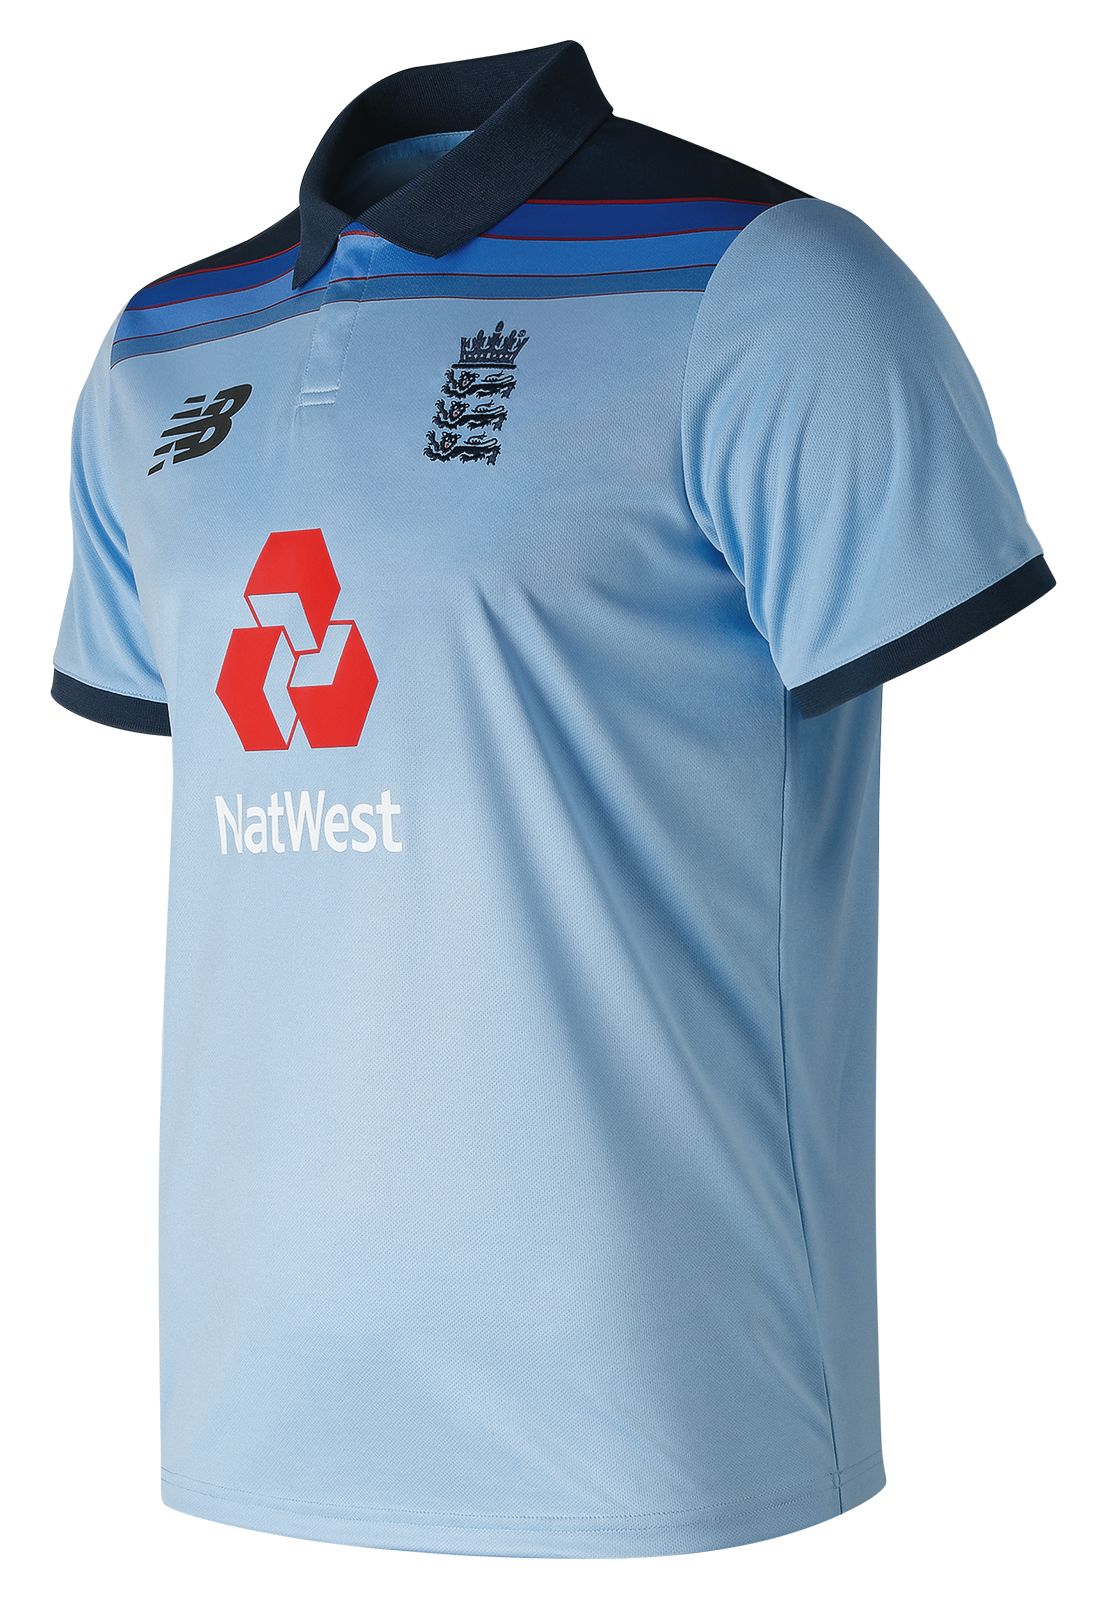 england cricket jersey color